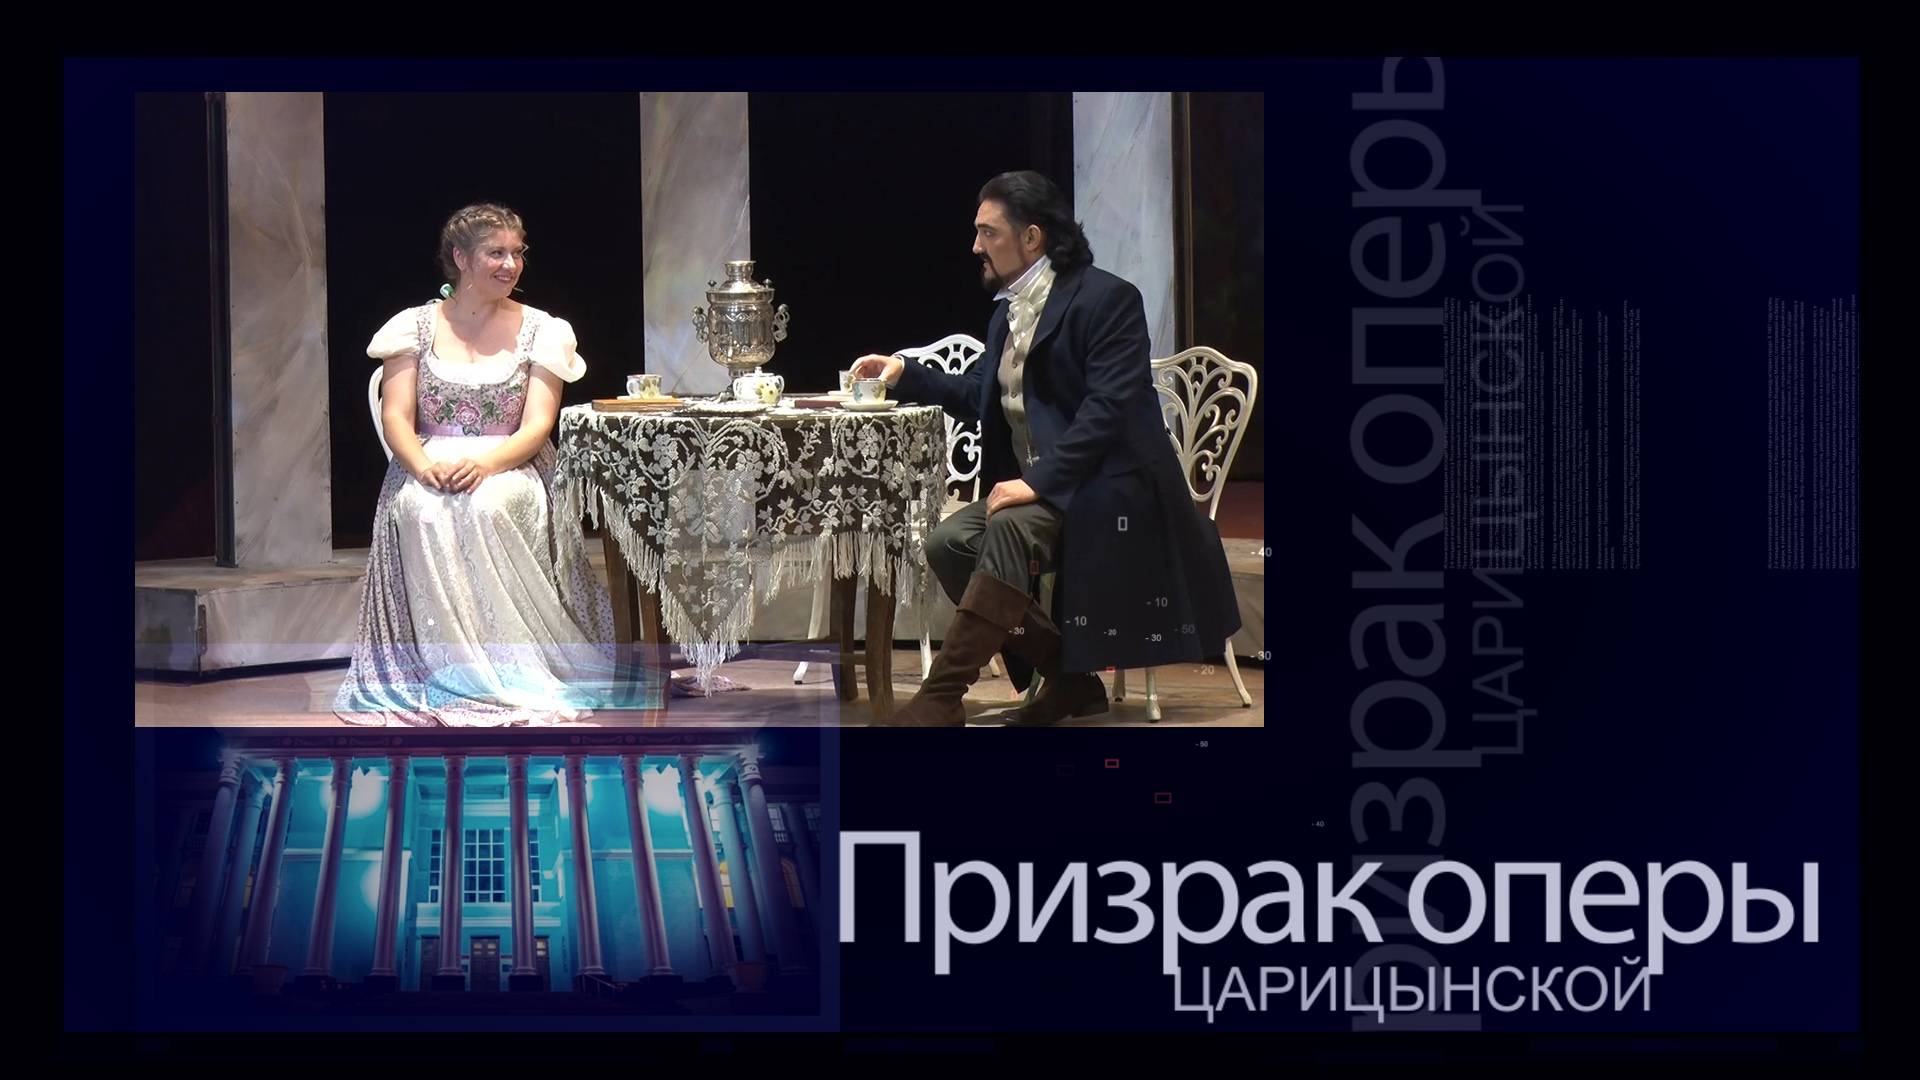 Долгожданный «Евгений Онегин», конференция о проблемах театра и скрипка за 250 млн евро